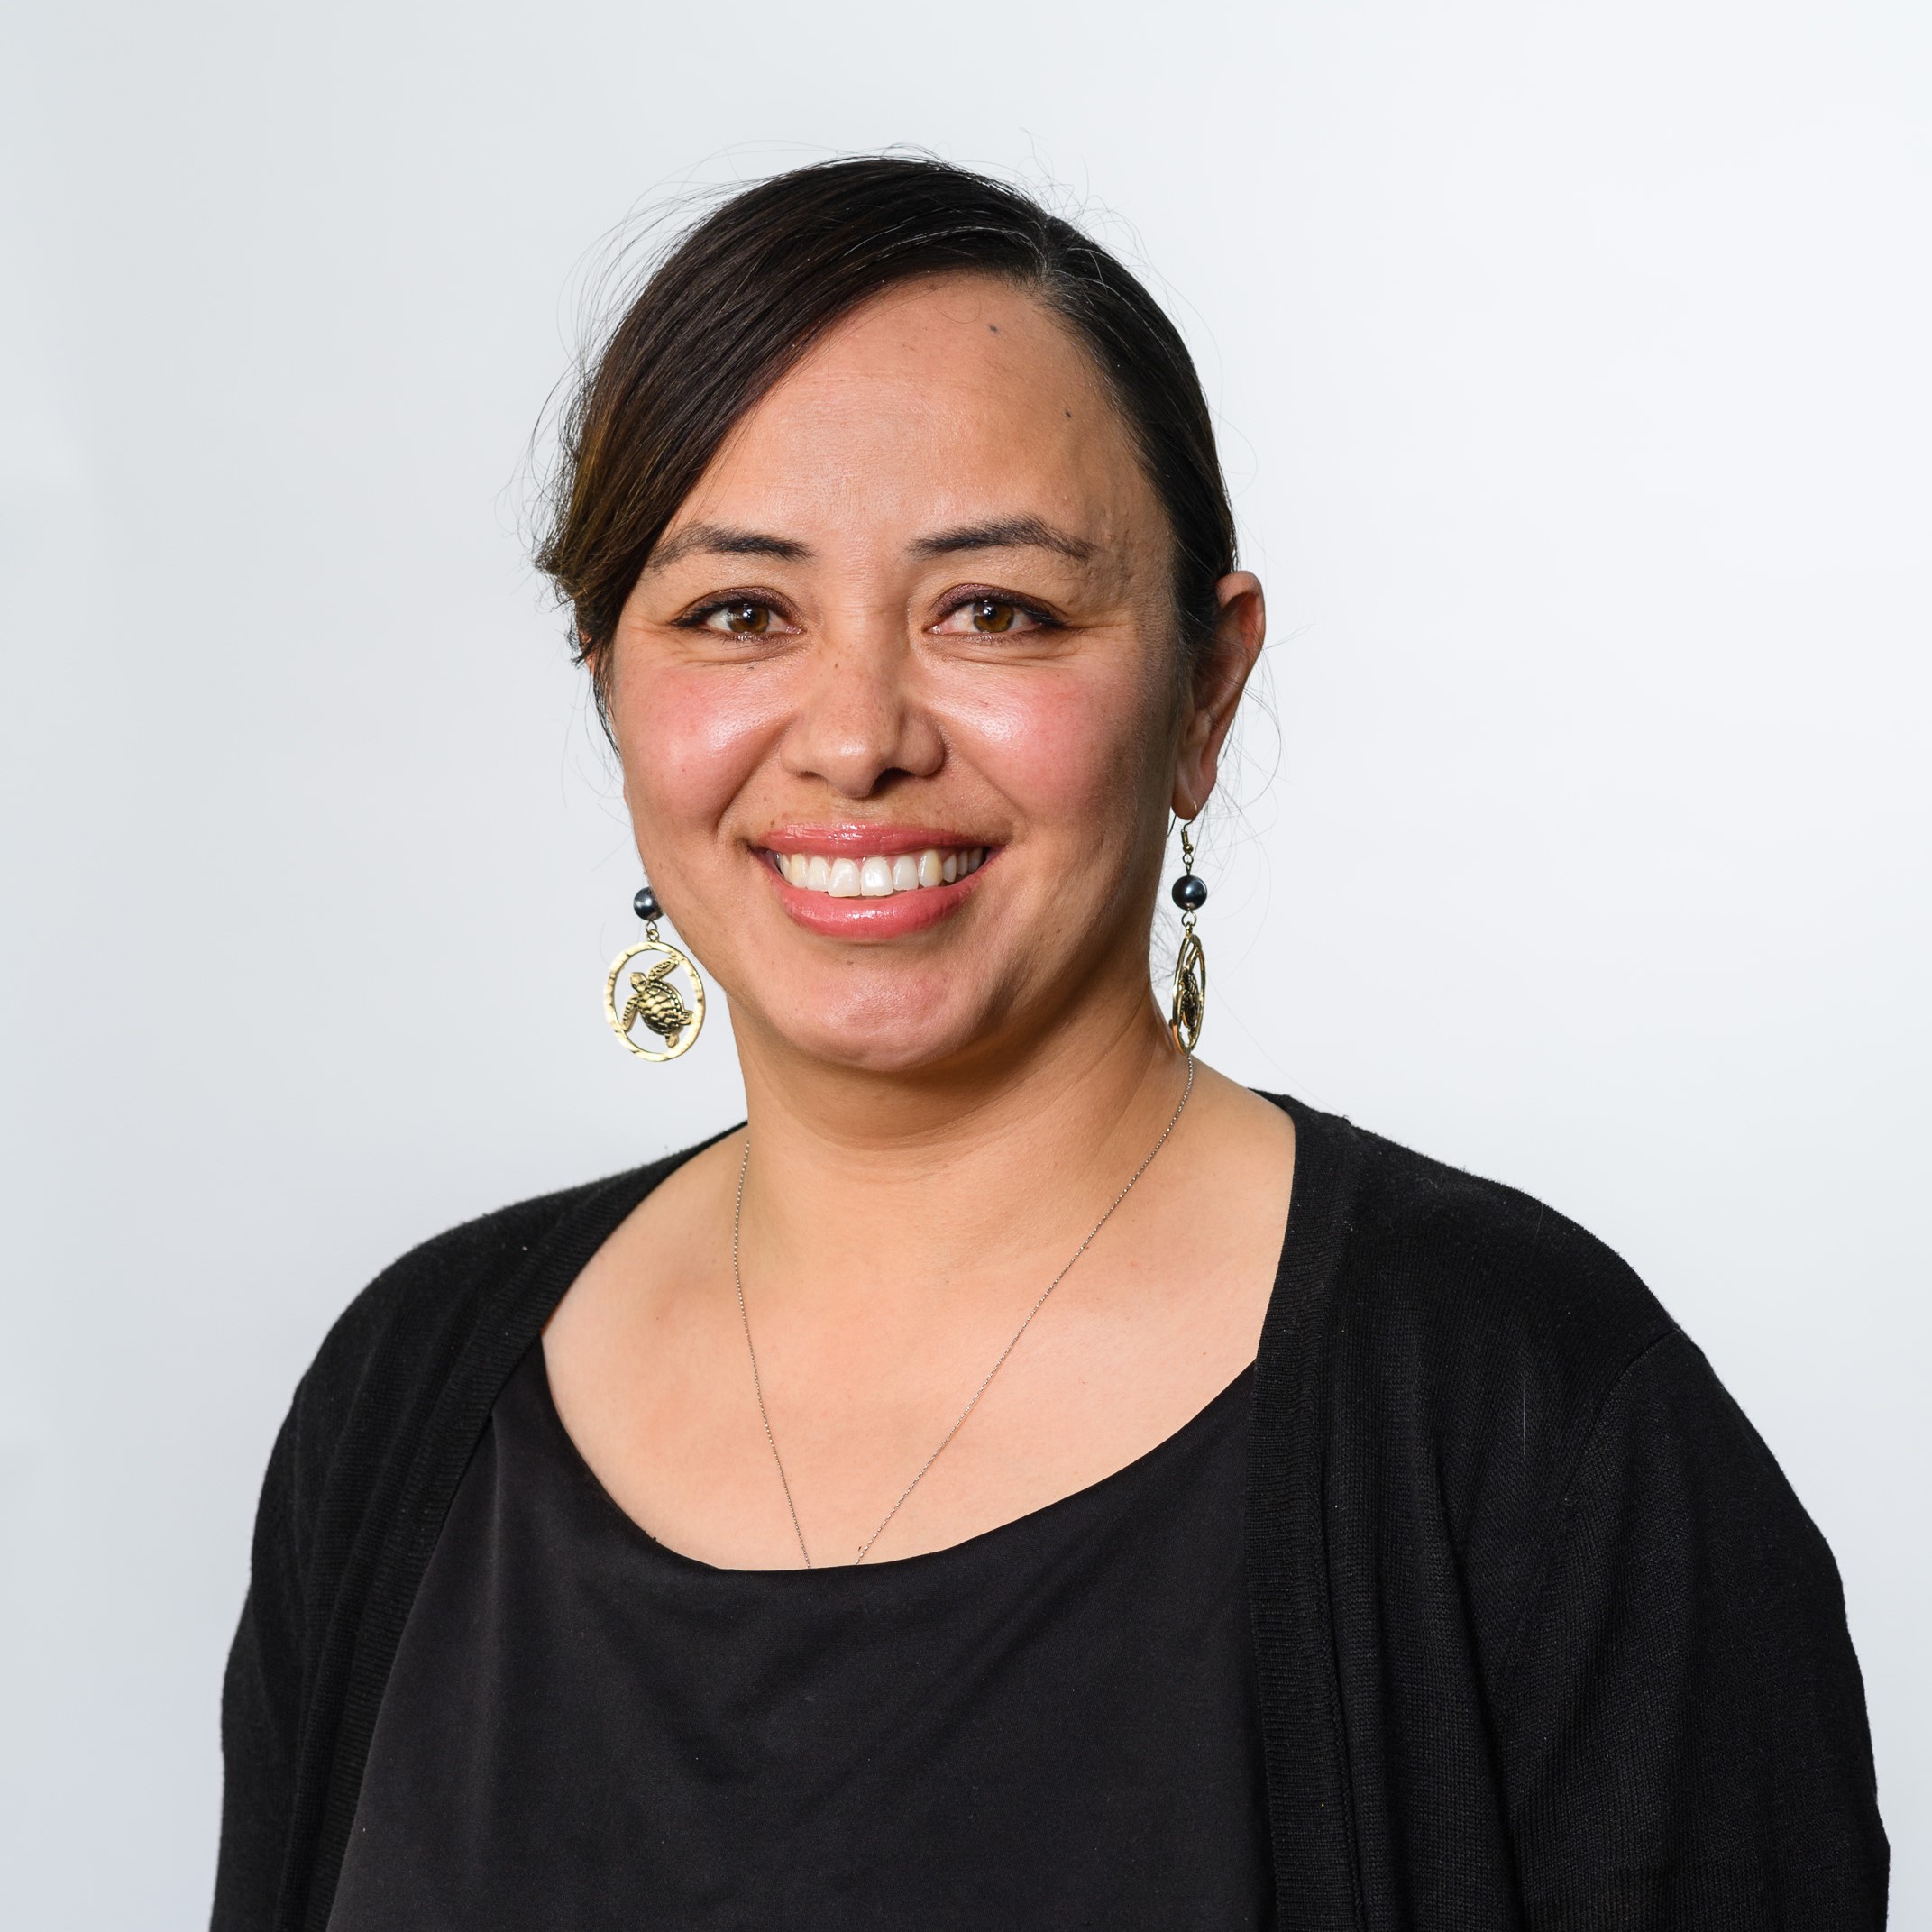 A portrait of Utufa’asisili Rosemary Mose, our Deputy Chief Executive Pasifika